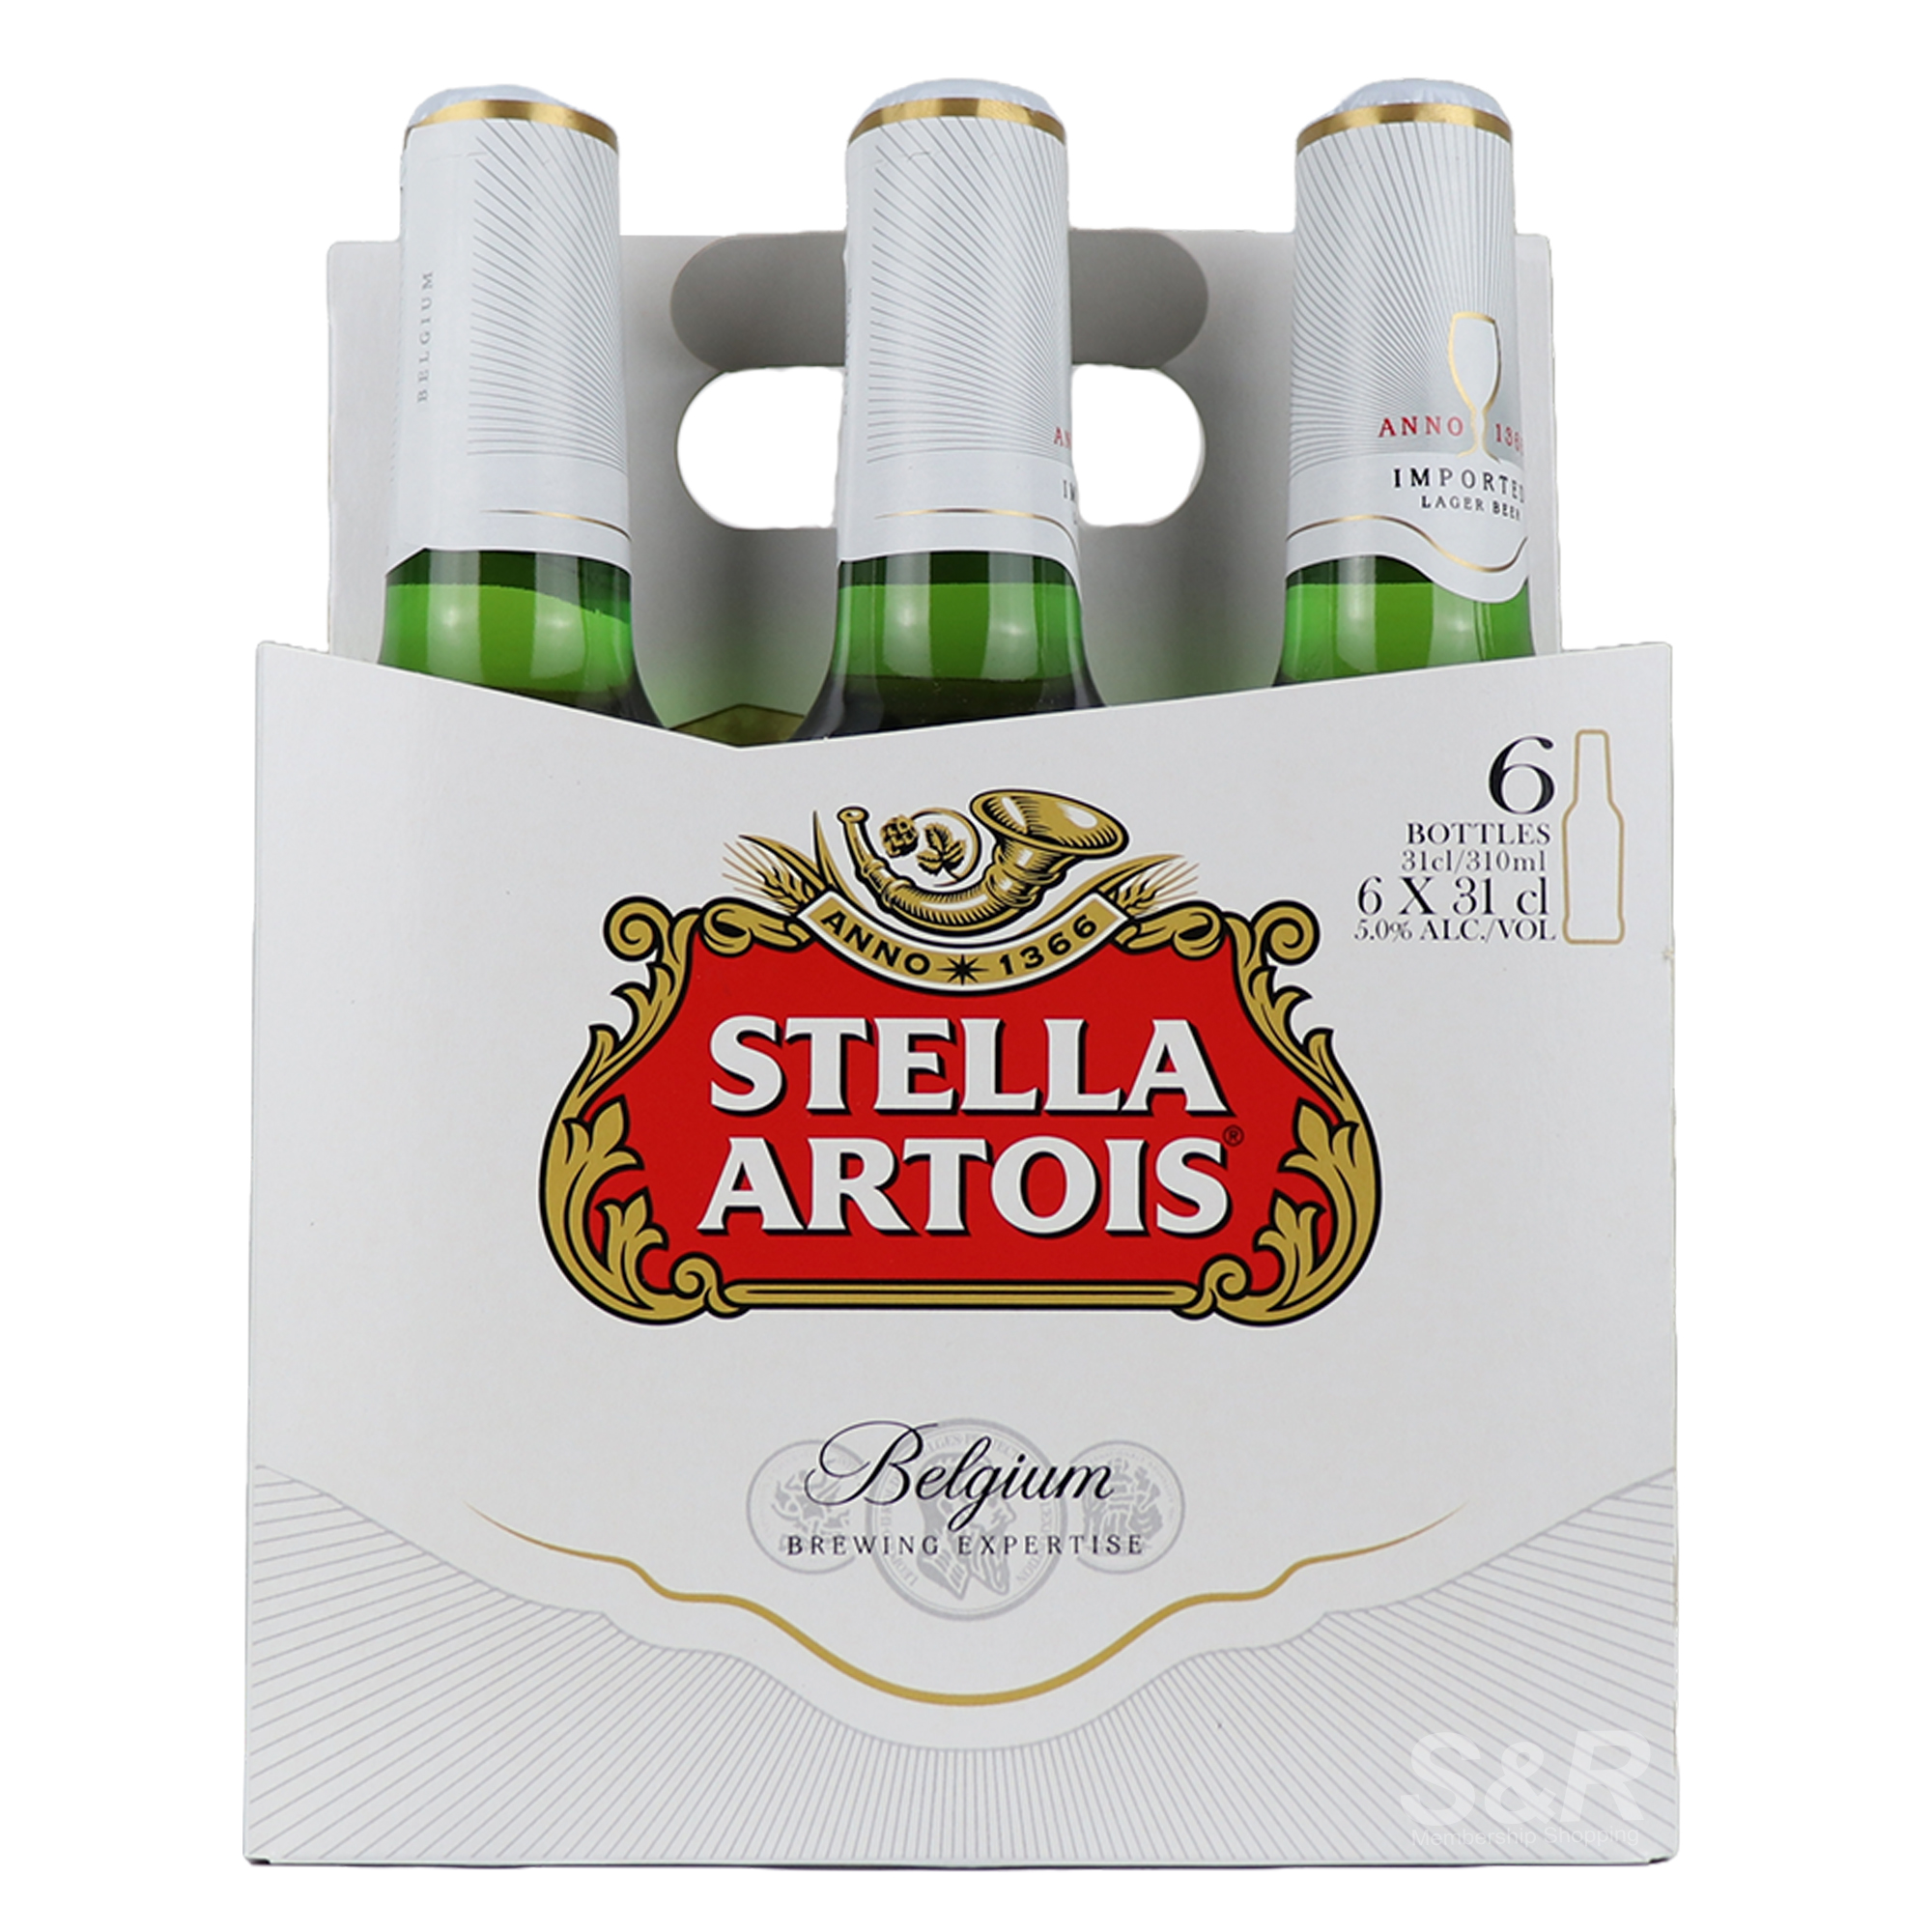 Stella Artois Imported Lager Beer Belgium 6 bottles